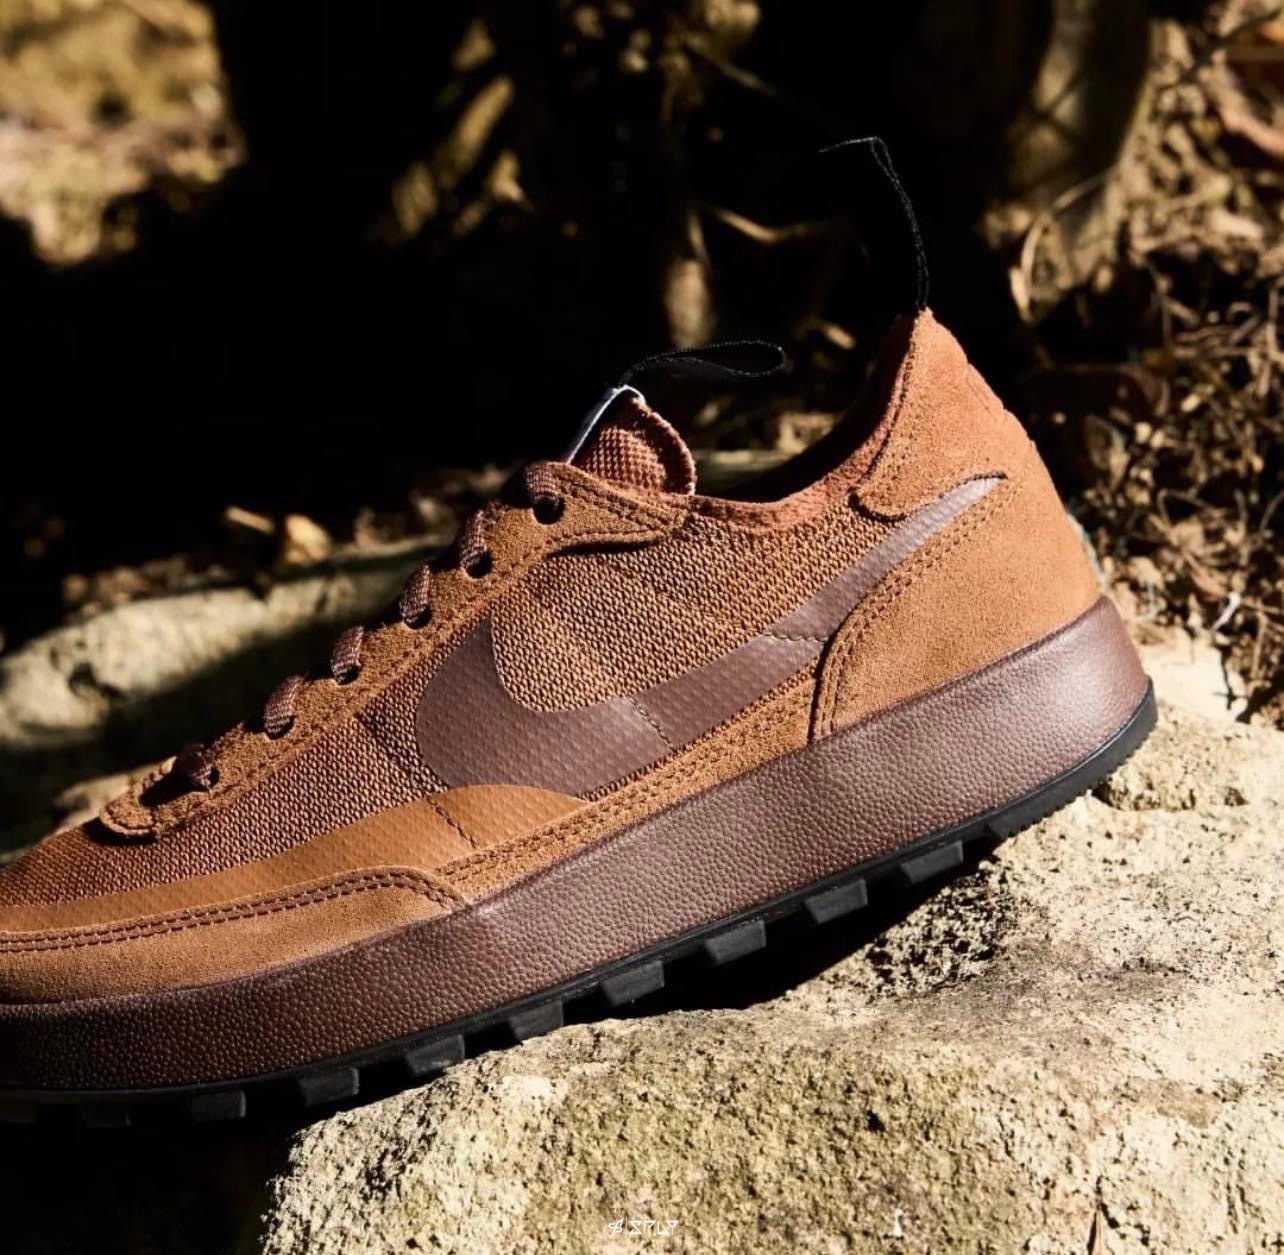 Tom Sachs x Nike Craft General Purpose Shoe Brown 棕色火星